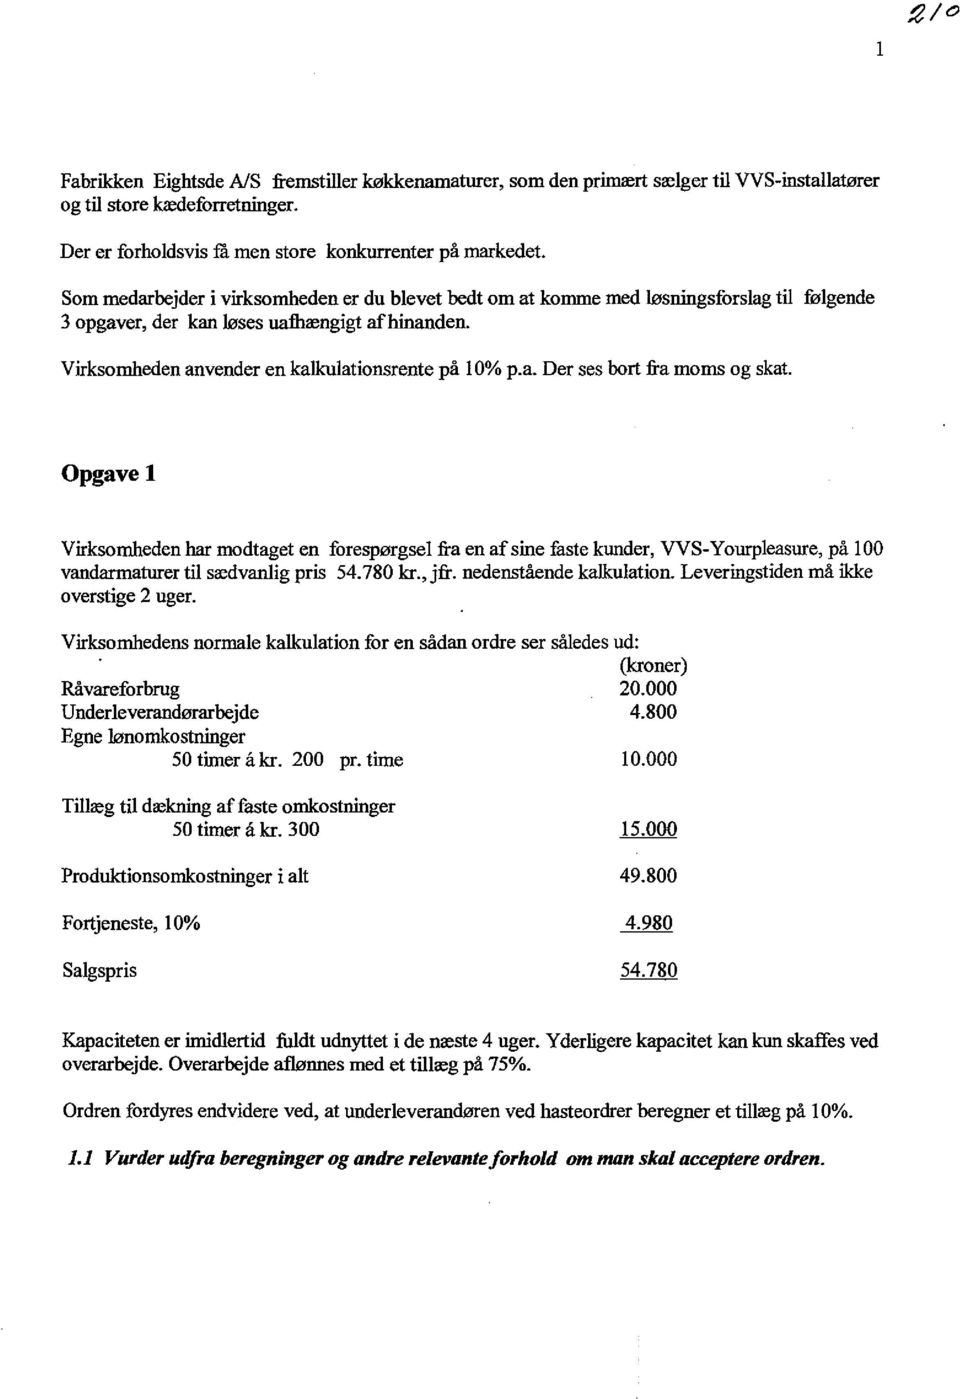 Opgave 1 Virksomheden har modtaget en forespørgsel fra en afsine faste kunder, VVS-y ourpleasure, på 100 vandarmaturer til sædvanlig pris 54.780 kr., jfr. nedenstående kalkulation.